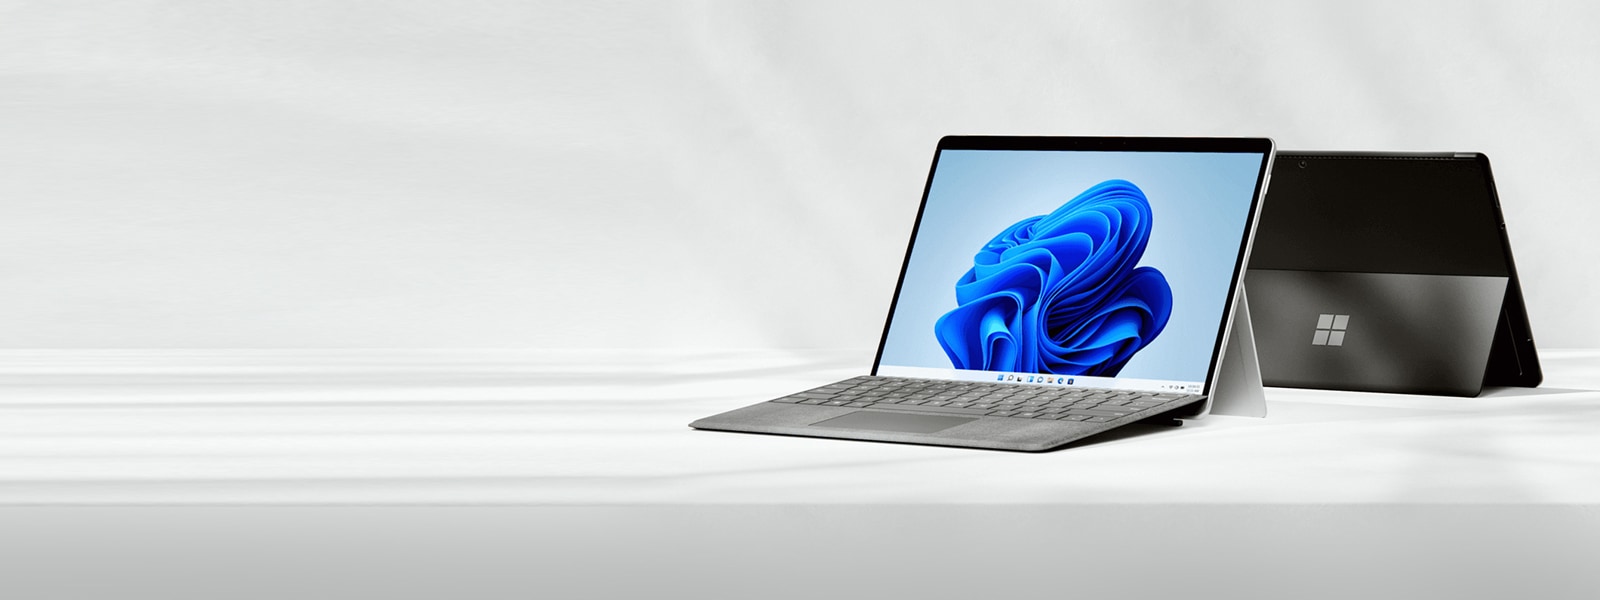 背面と前面図を示す、2 台の開いた Surface Pro 8 デバイス。